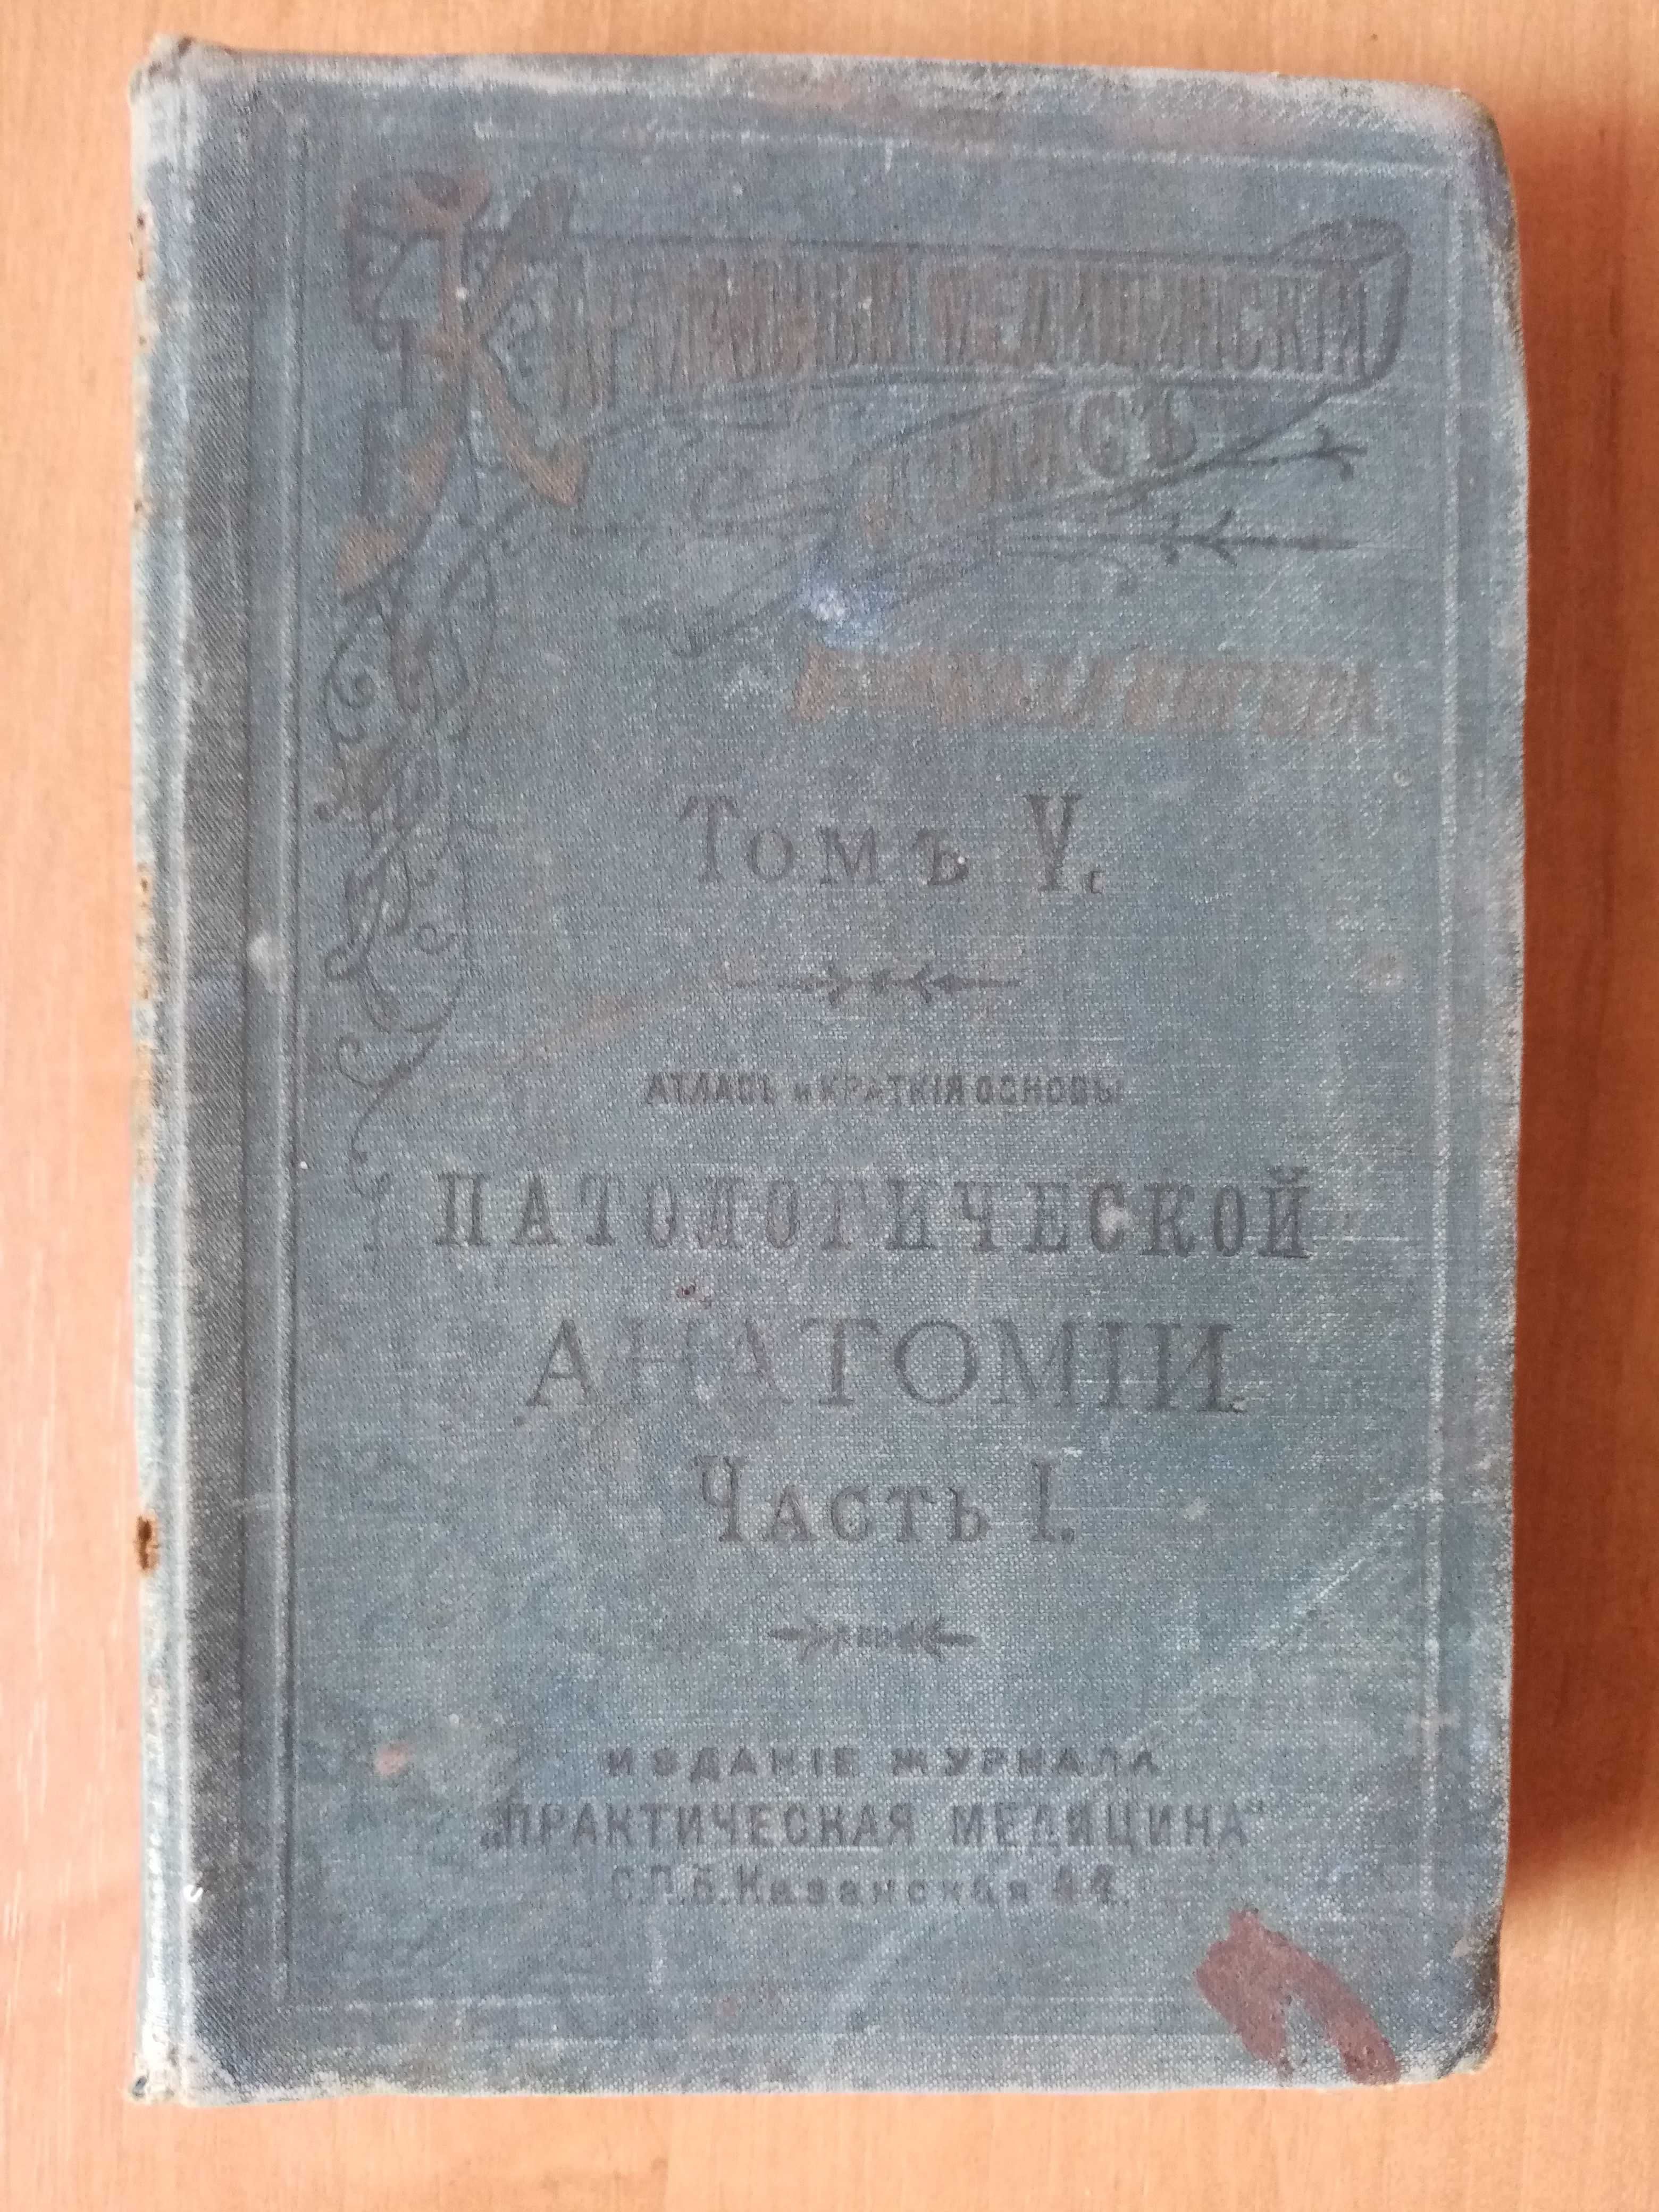 Том 5. Атлас и краткие основы патологической анатомии. Часть 1. 1897г.